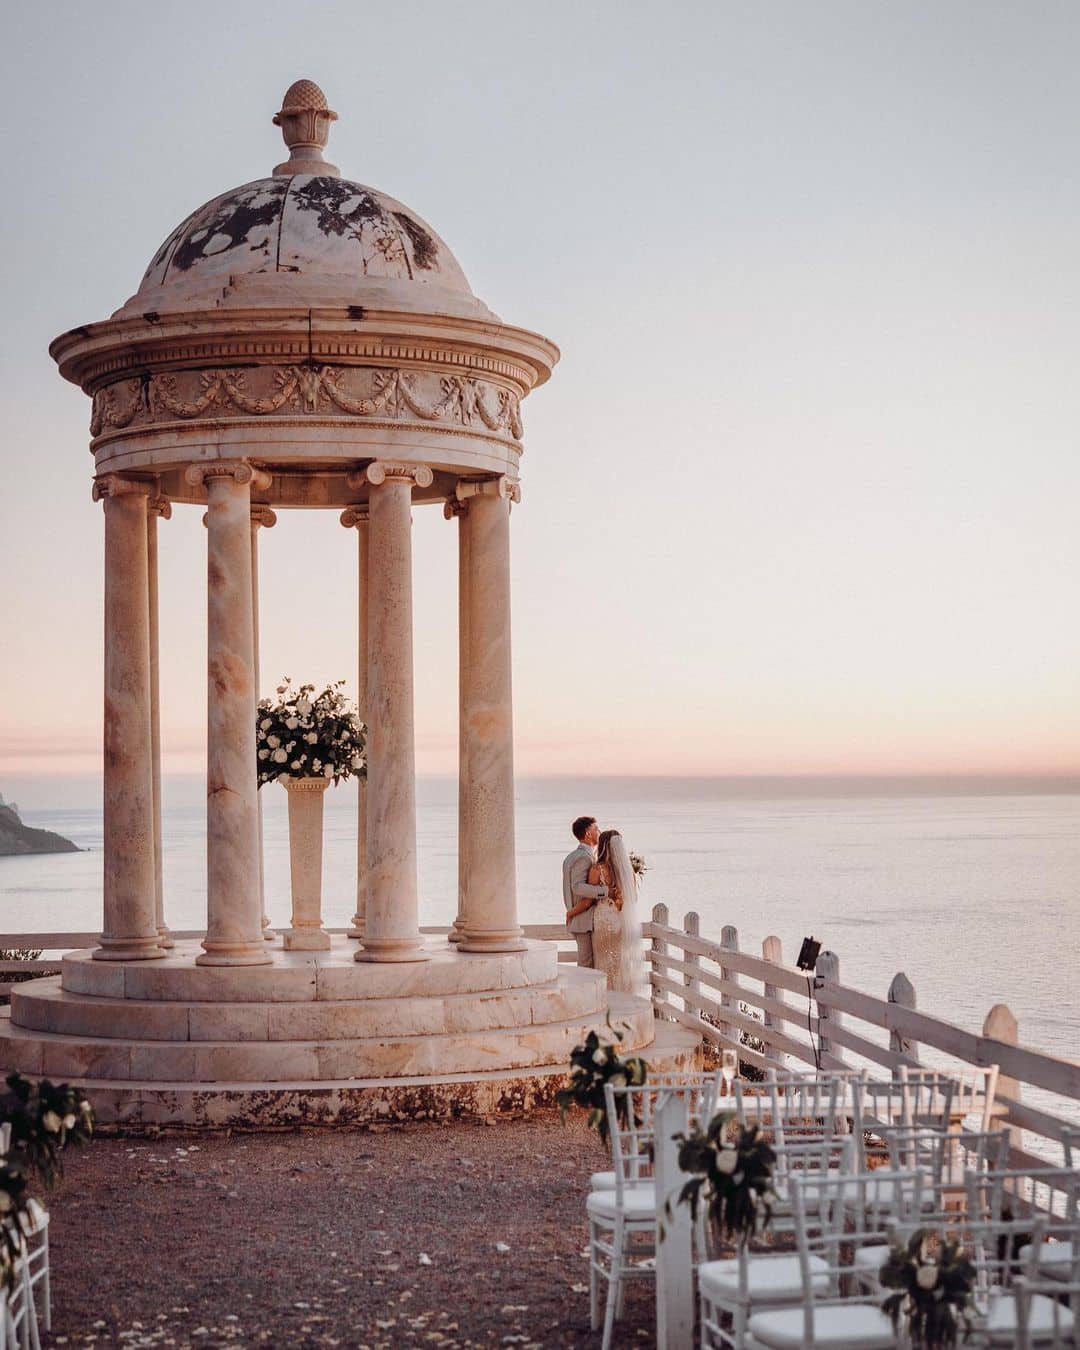 Románticas vistas del templete de mármol con una pareja disfrutando del atardecer en Finca Son Marroig, Mallorca.